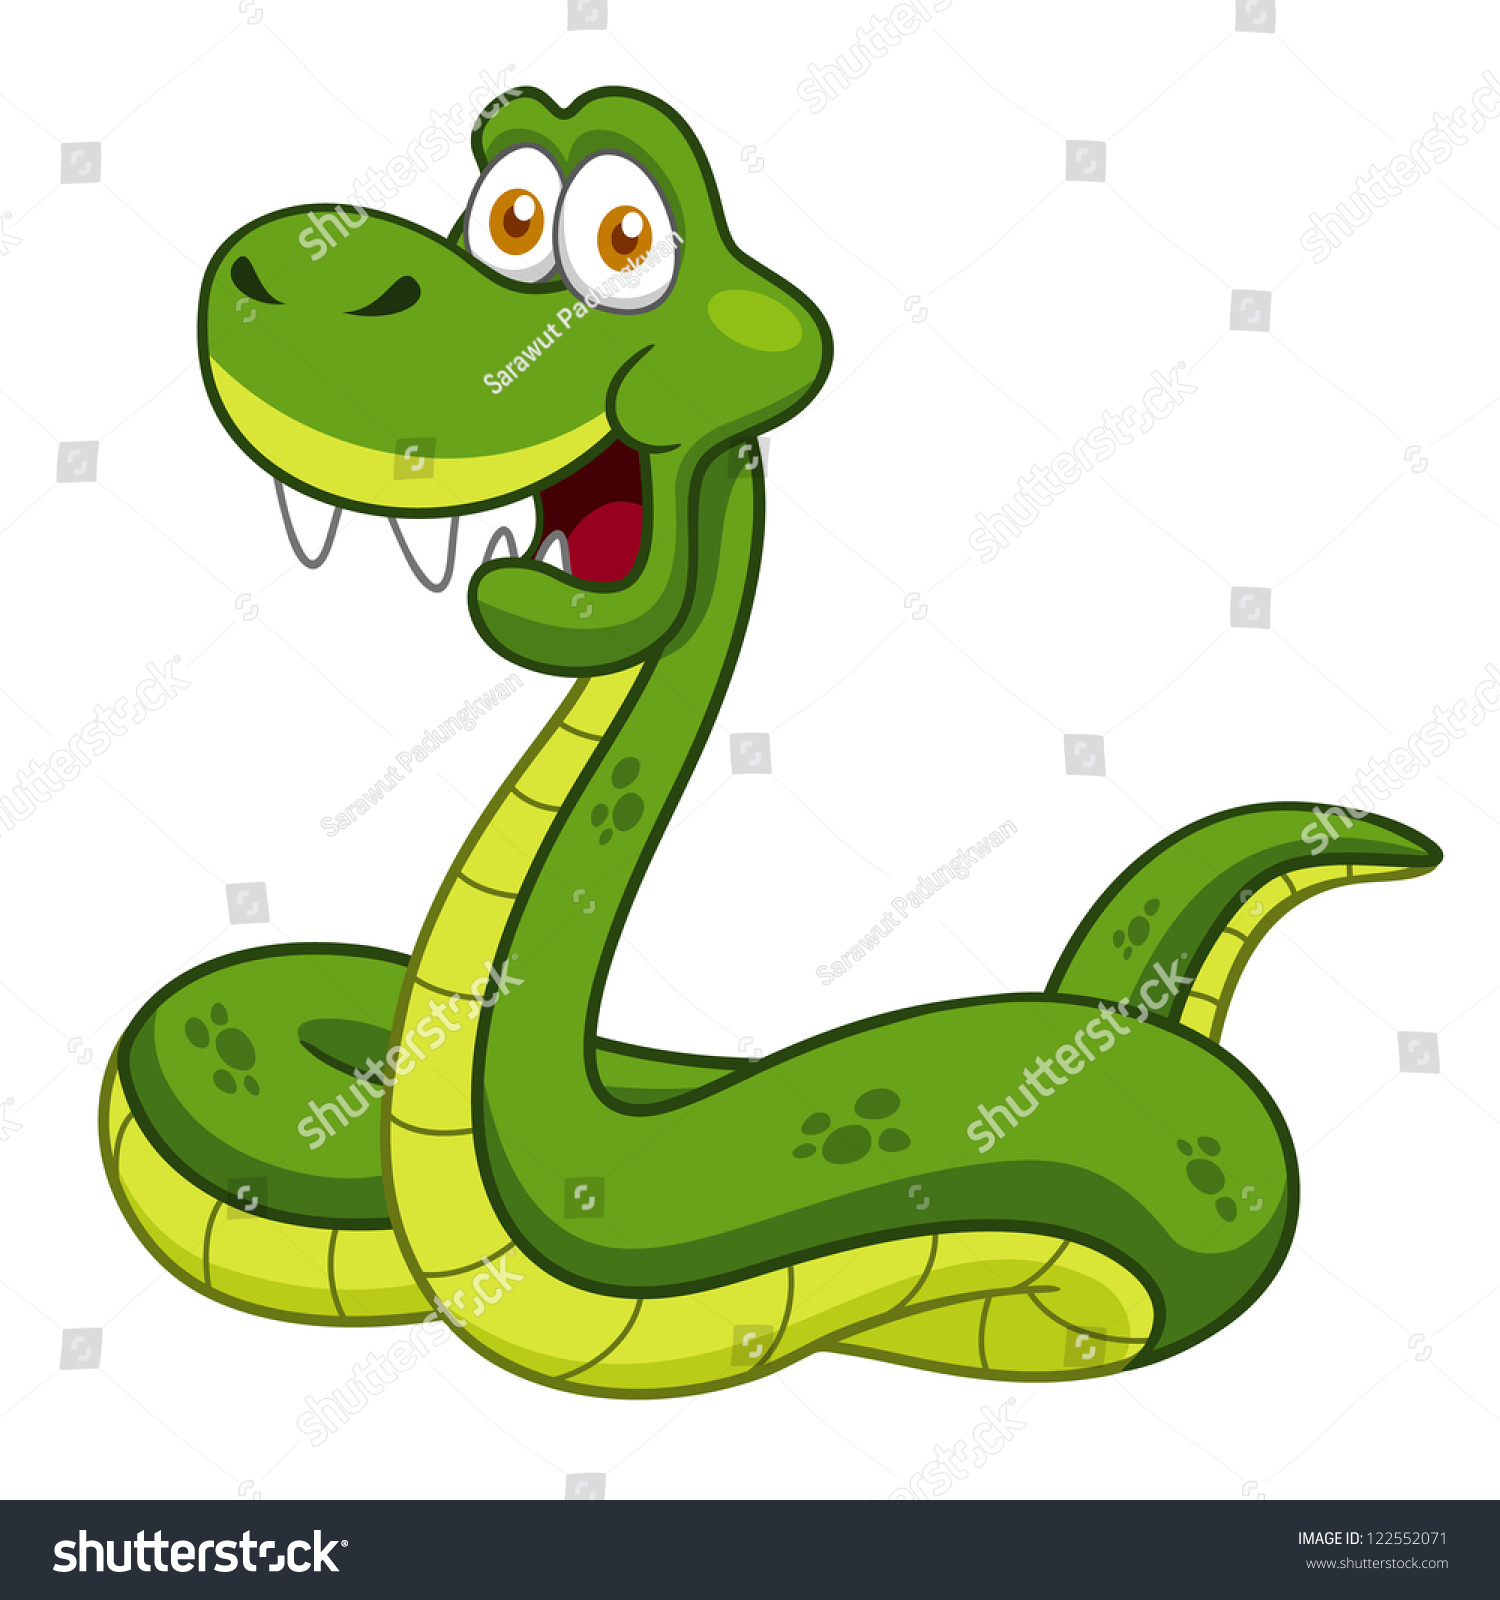 Illustration Cartoon Snake Stock Vector 122552071 - Shutterstock